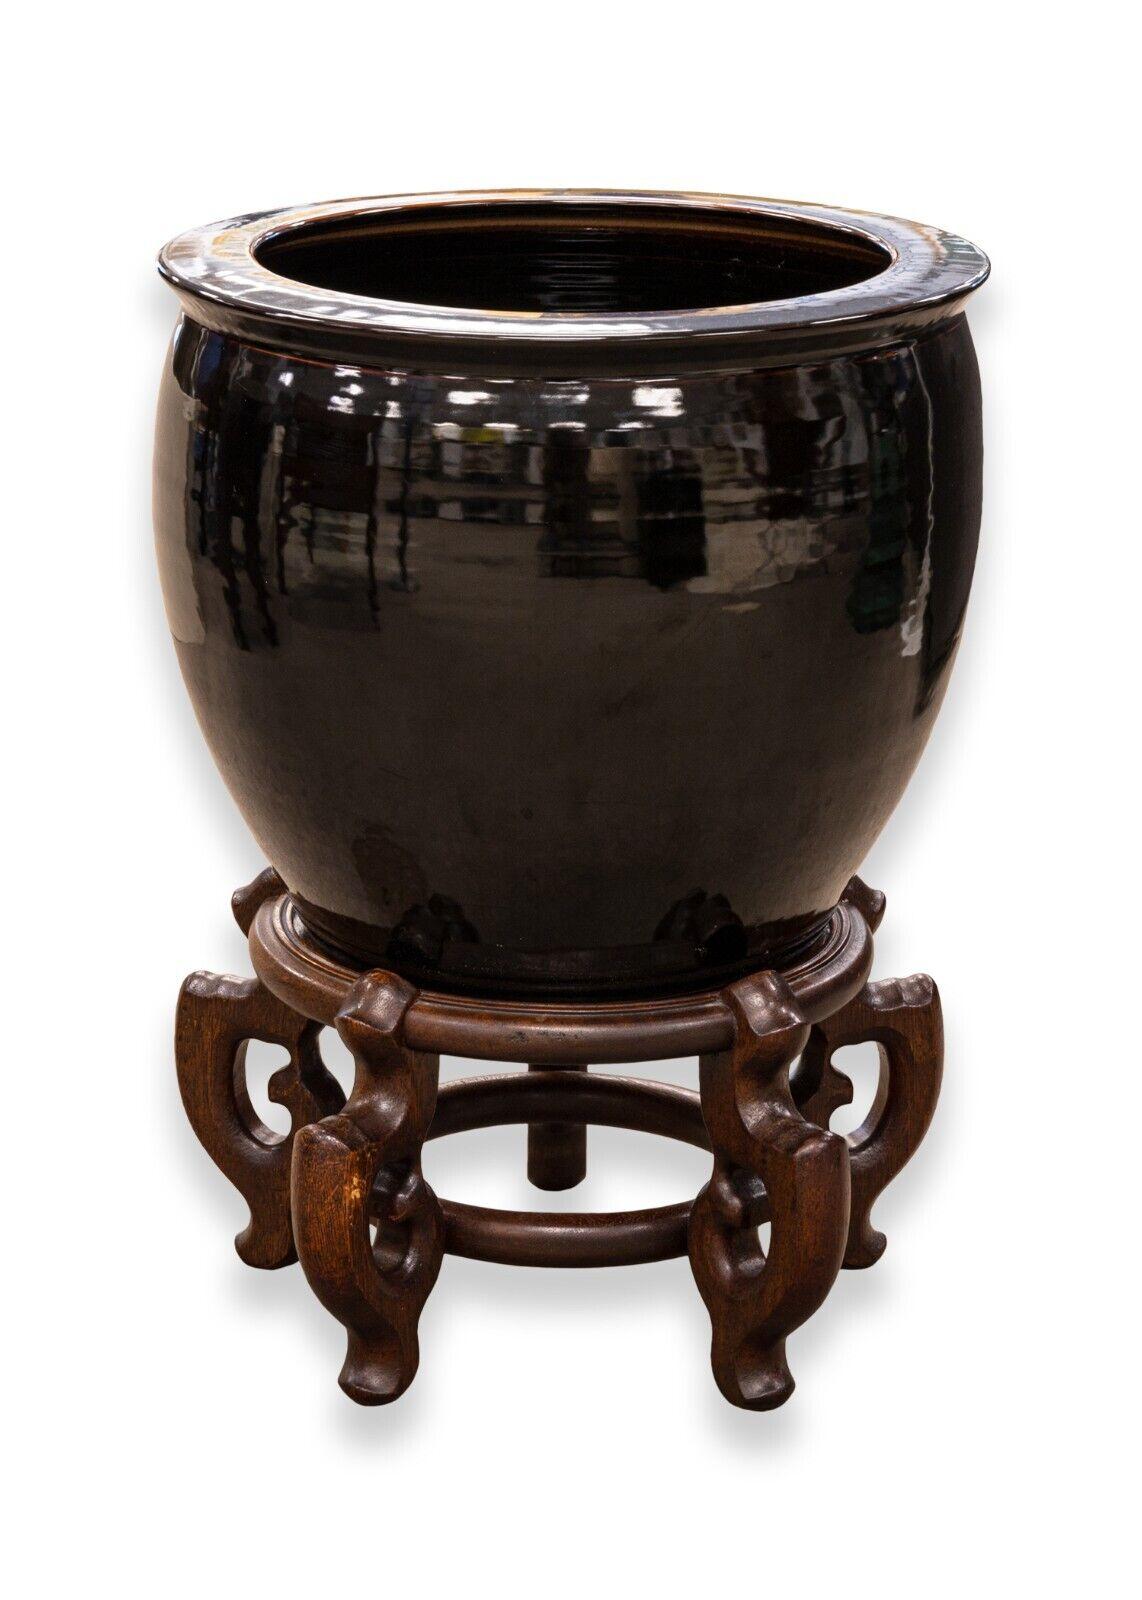 Une paire intemporelle de vases asiatiques en céramique à fond d'urne sur des supports en bois ornés. Ces vases ont une riche glaçure noire avec des touches de couleur sur le pourtour. Ils sont posés sur une paire d'étonnants supports en bois ornés.